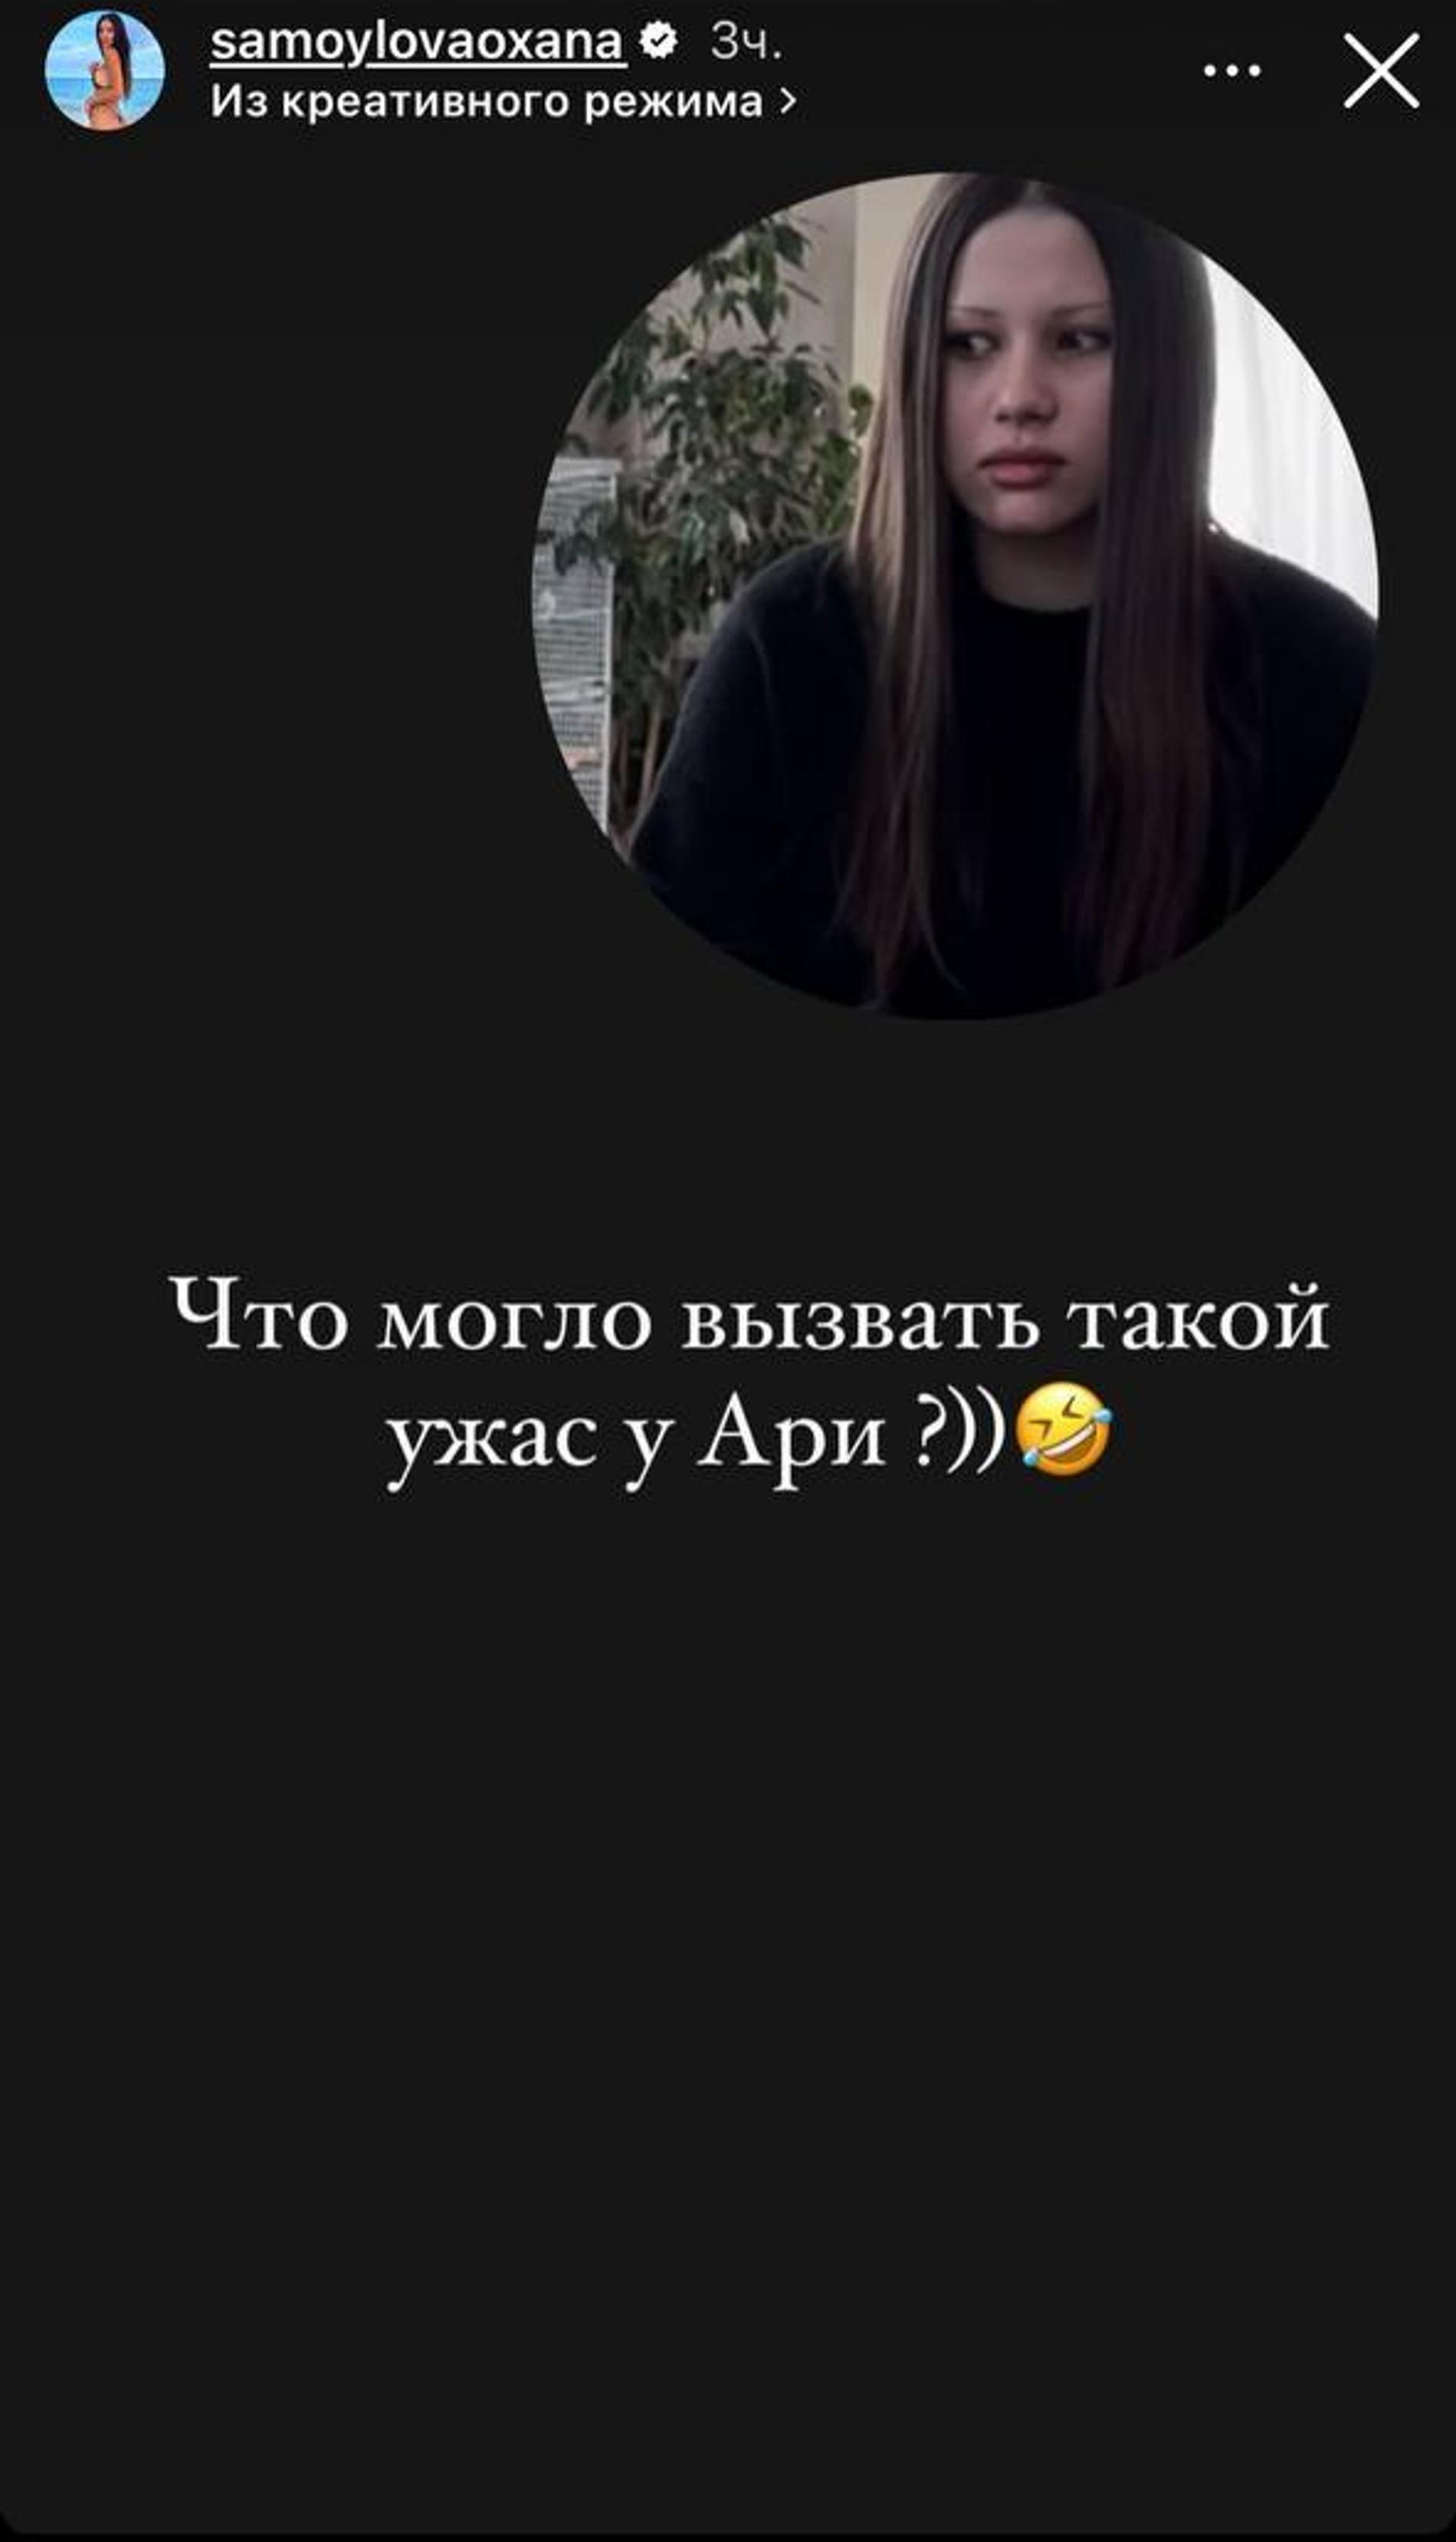 Оксана Самойлова и Джиган жестко разыграли детей 1 апреля: «Это их страшный сон»